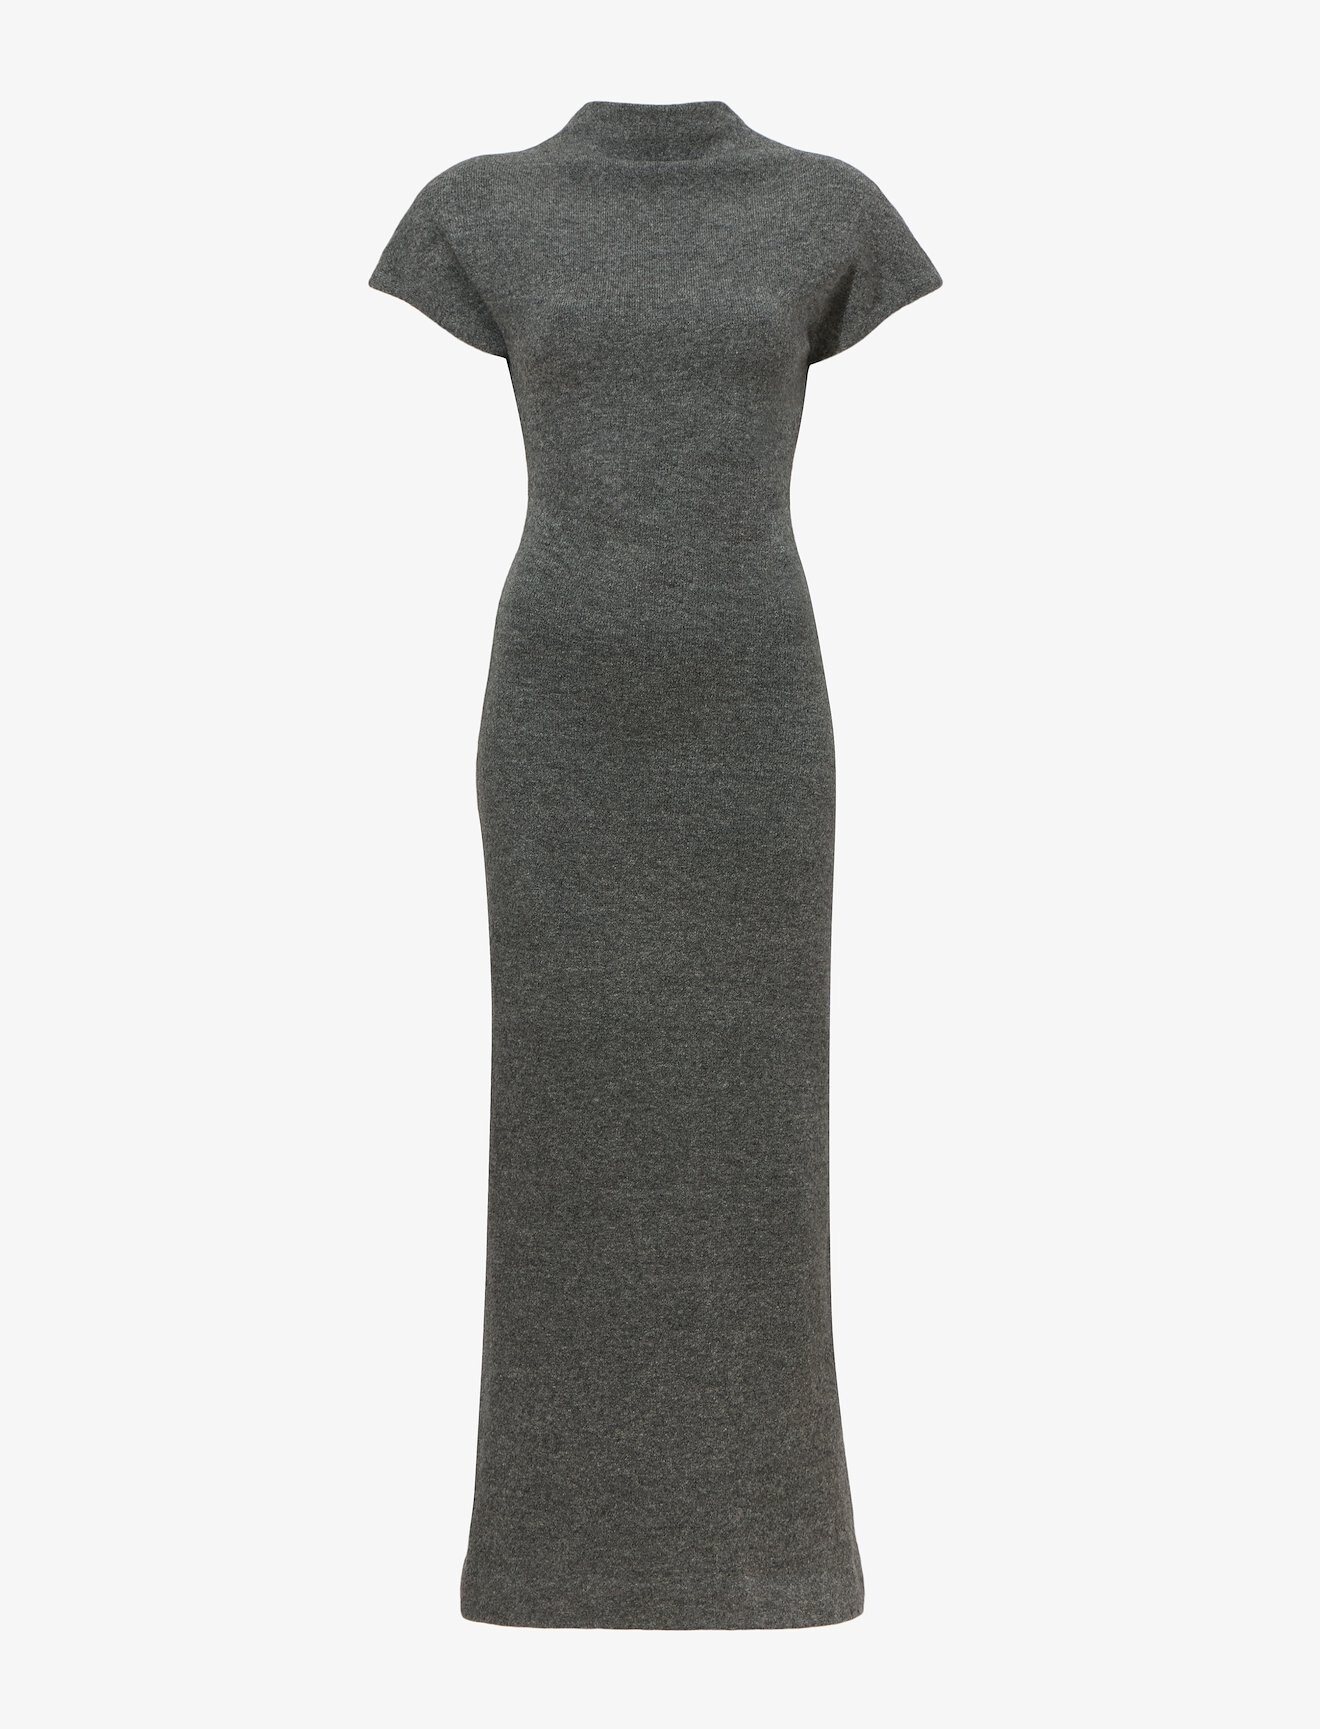 Wool Knit Twisted Dress in grey | Proenza Schouler